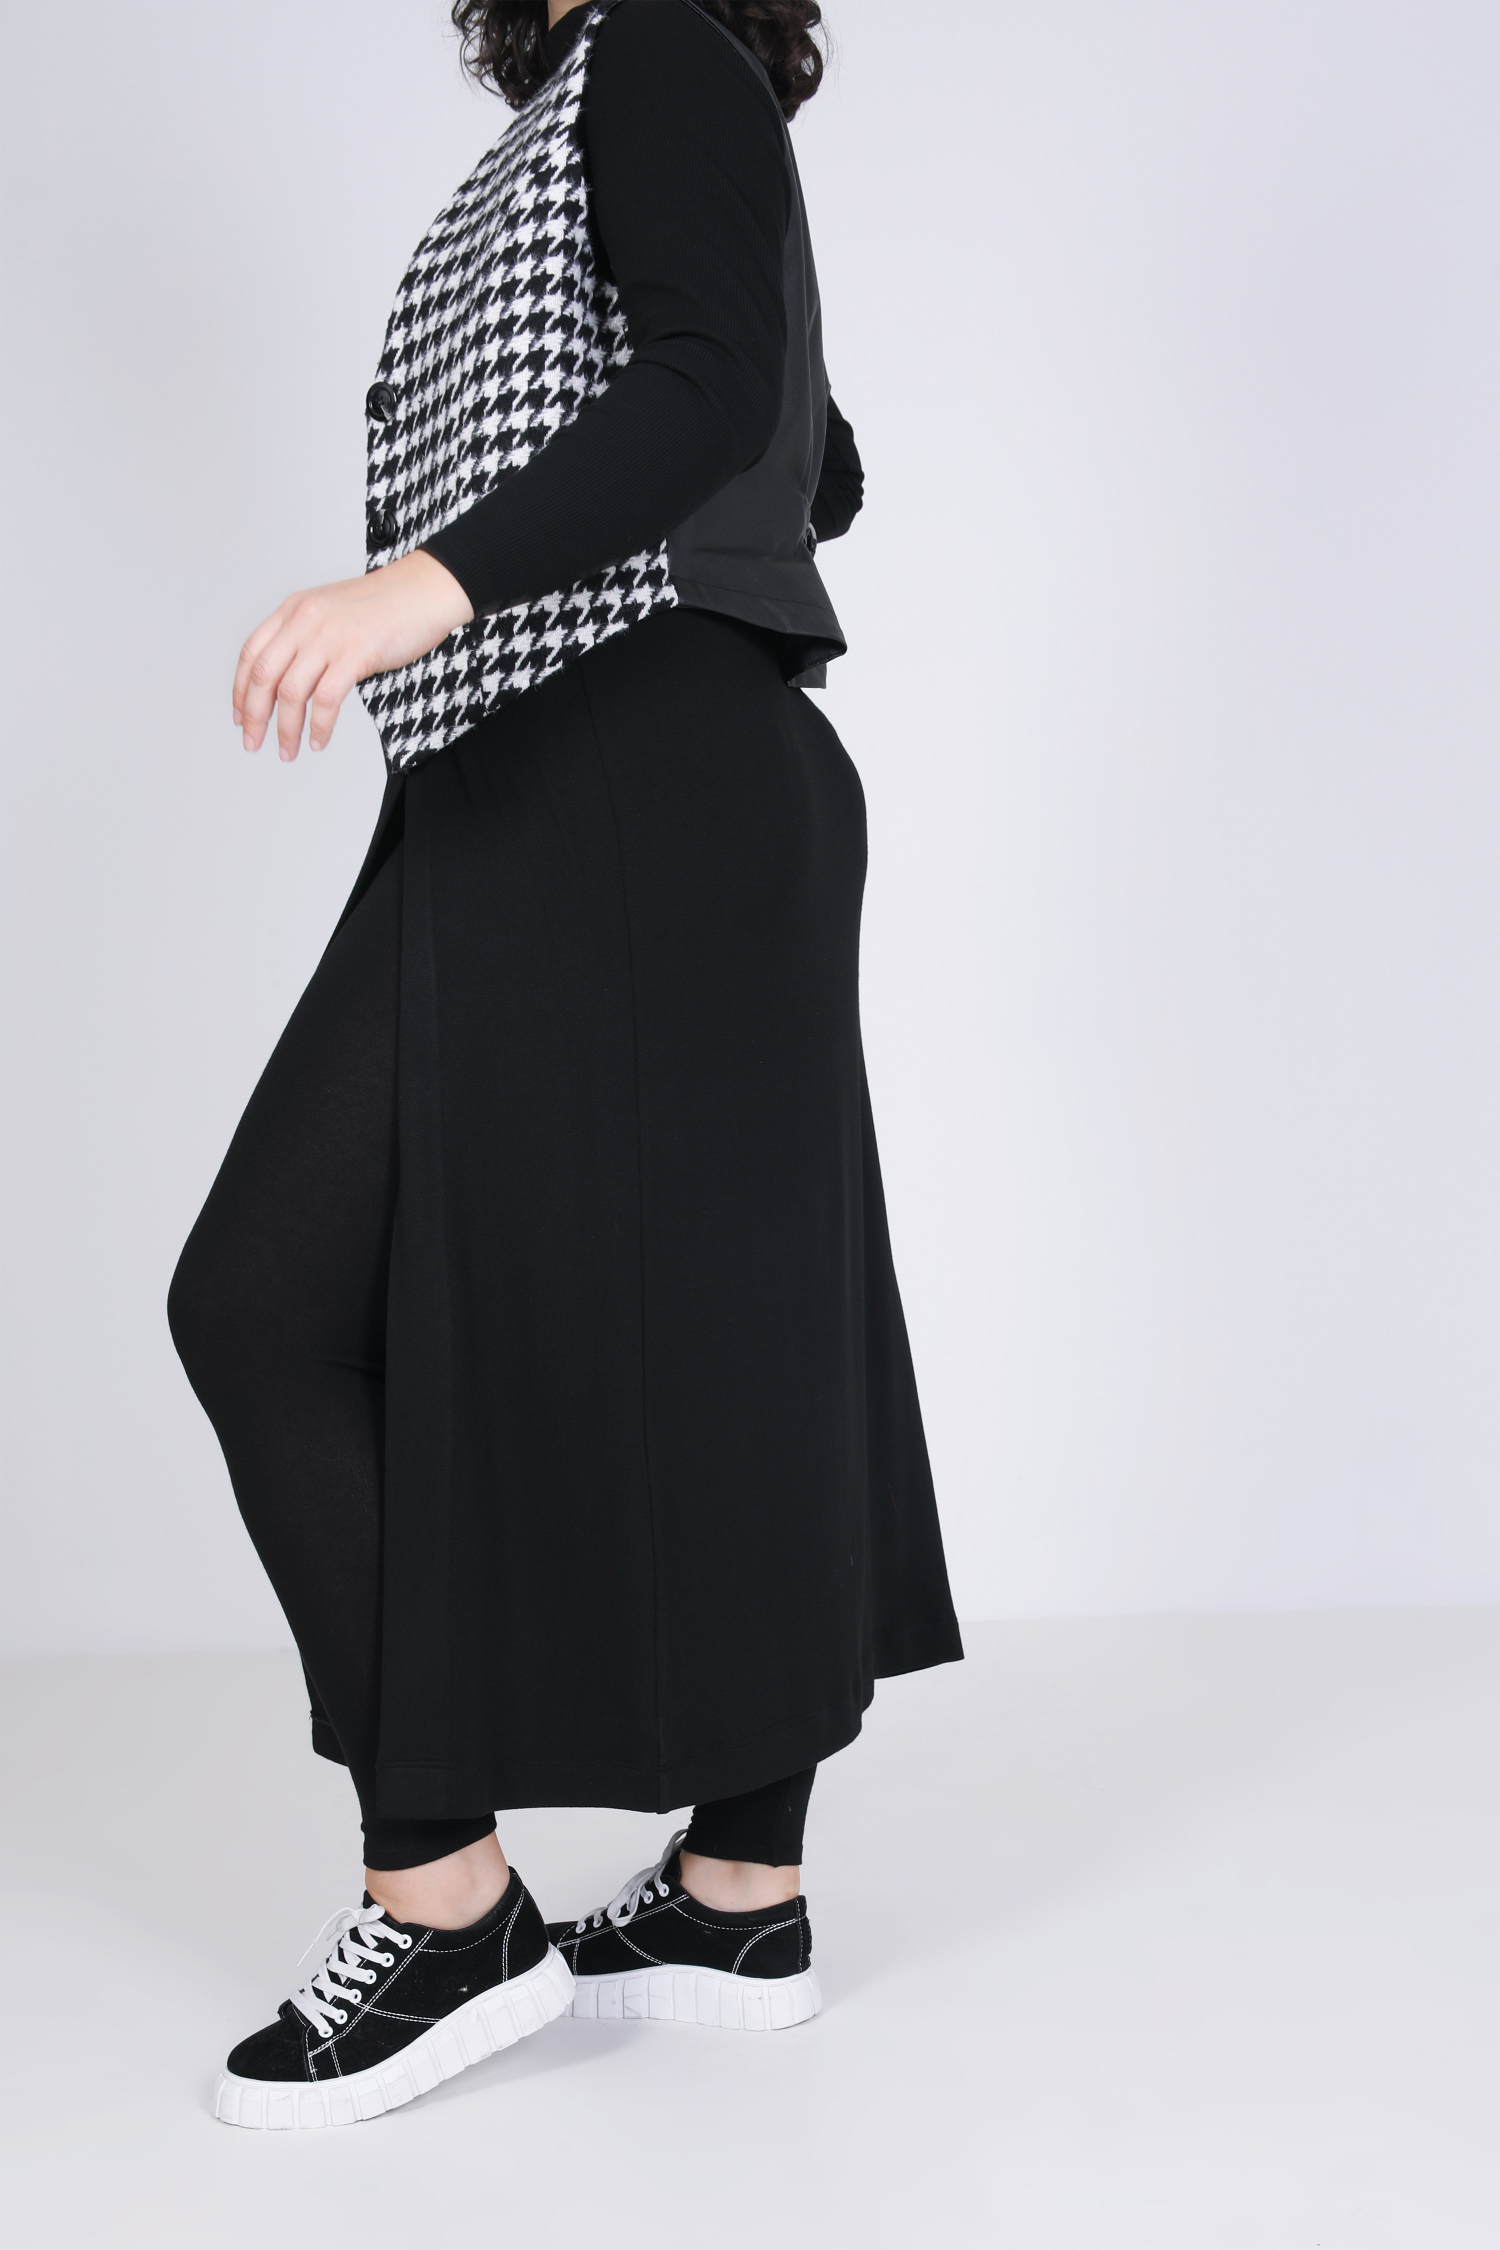 mottled knit leggings with wrap skirt effect